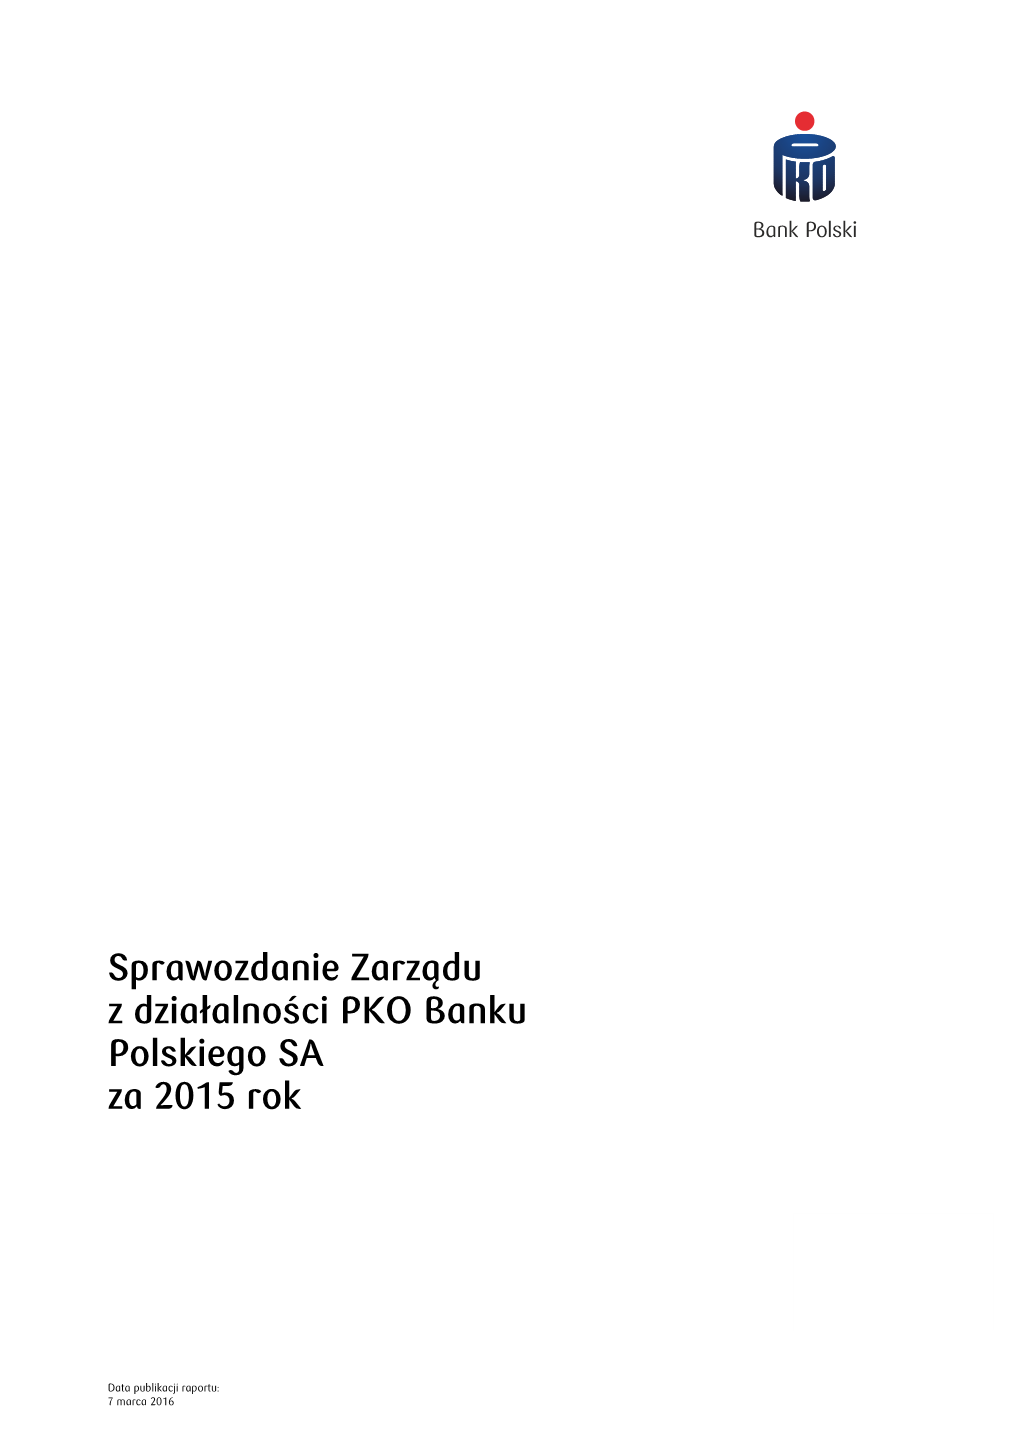 Sprawozdanie Zarządu Z Działalności PKO Banku Polskiego SA Za 2015 Rok